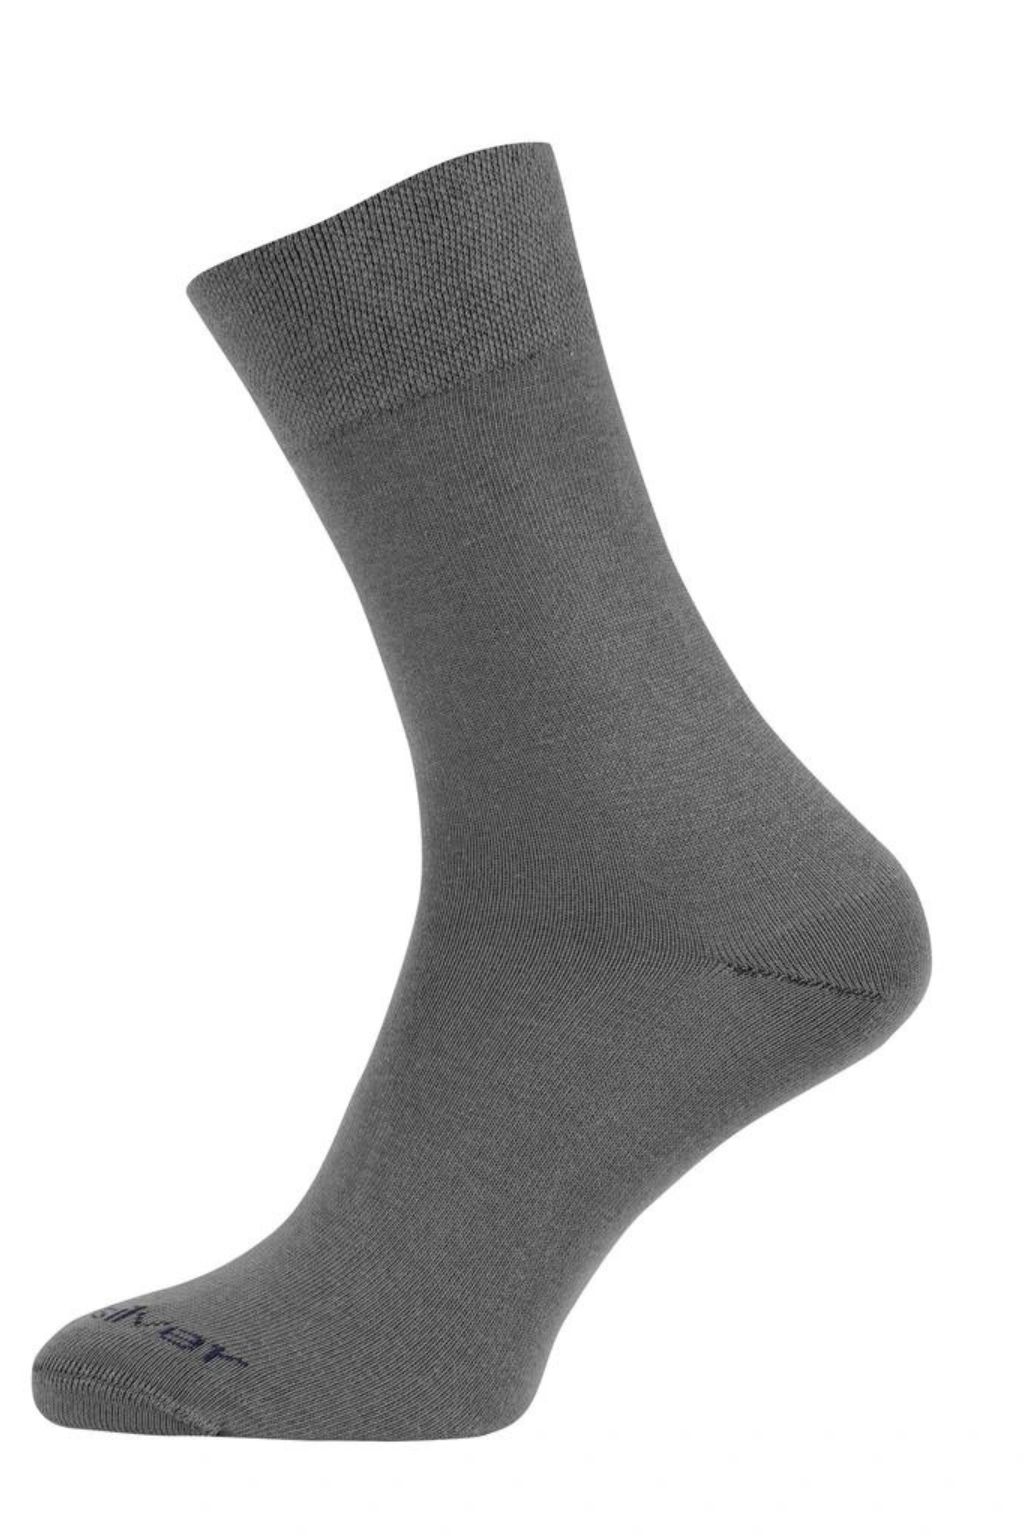 nanosilver® Společenské ponožky se stříbrem nanosilver NEW šedé Velikost: L 43/46